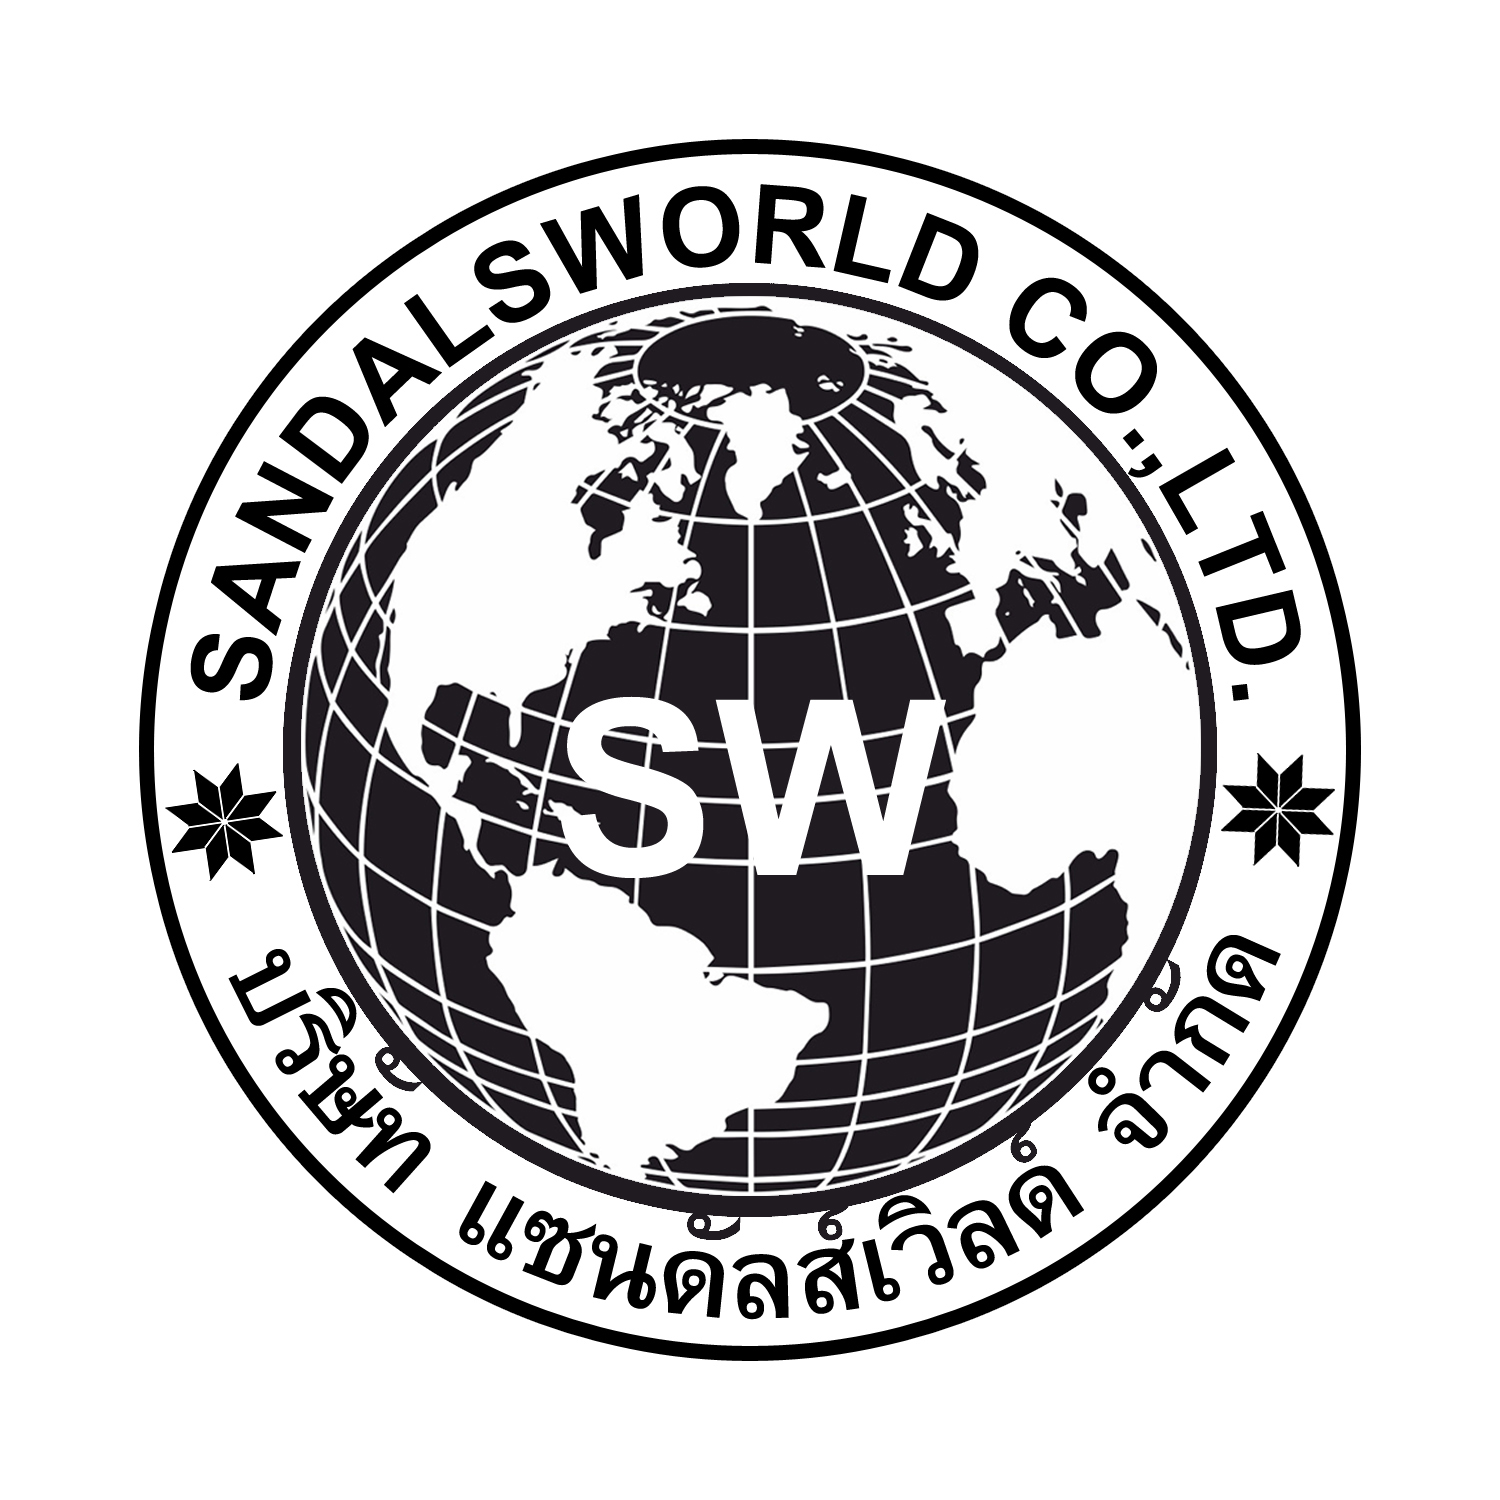 SANDALSWORLD CO. LTD.